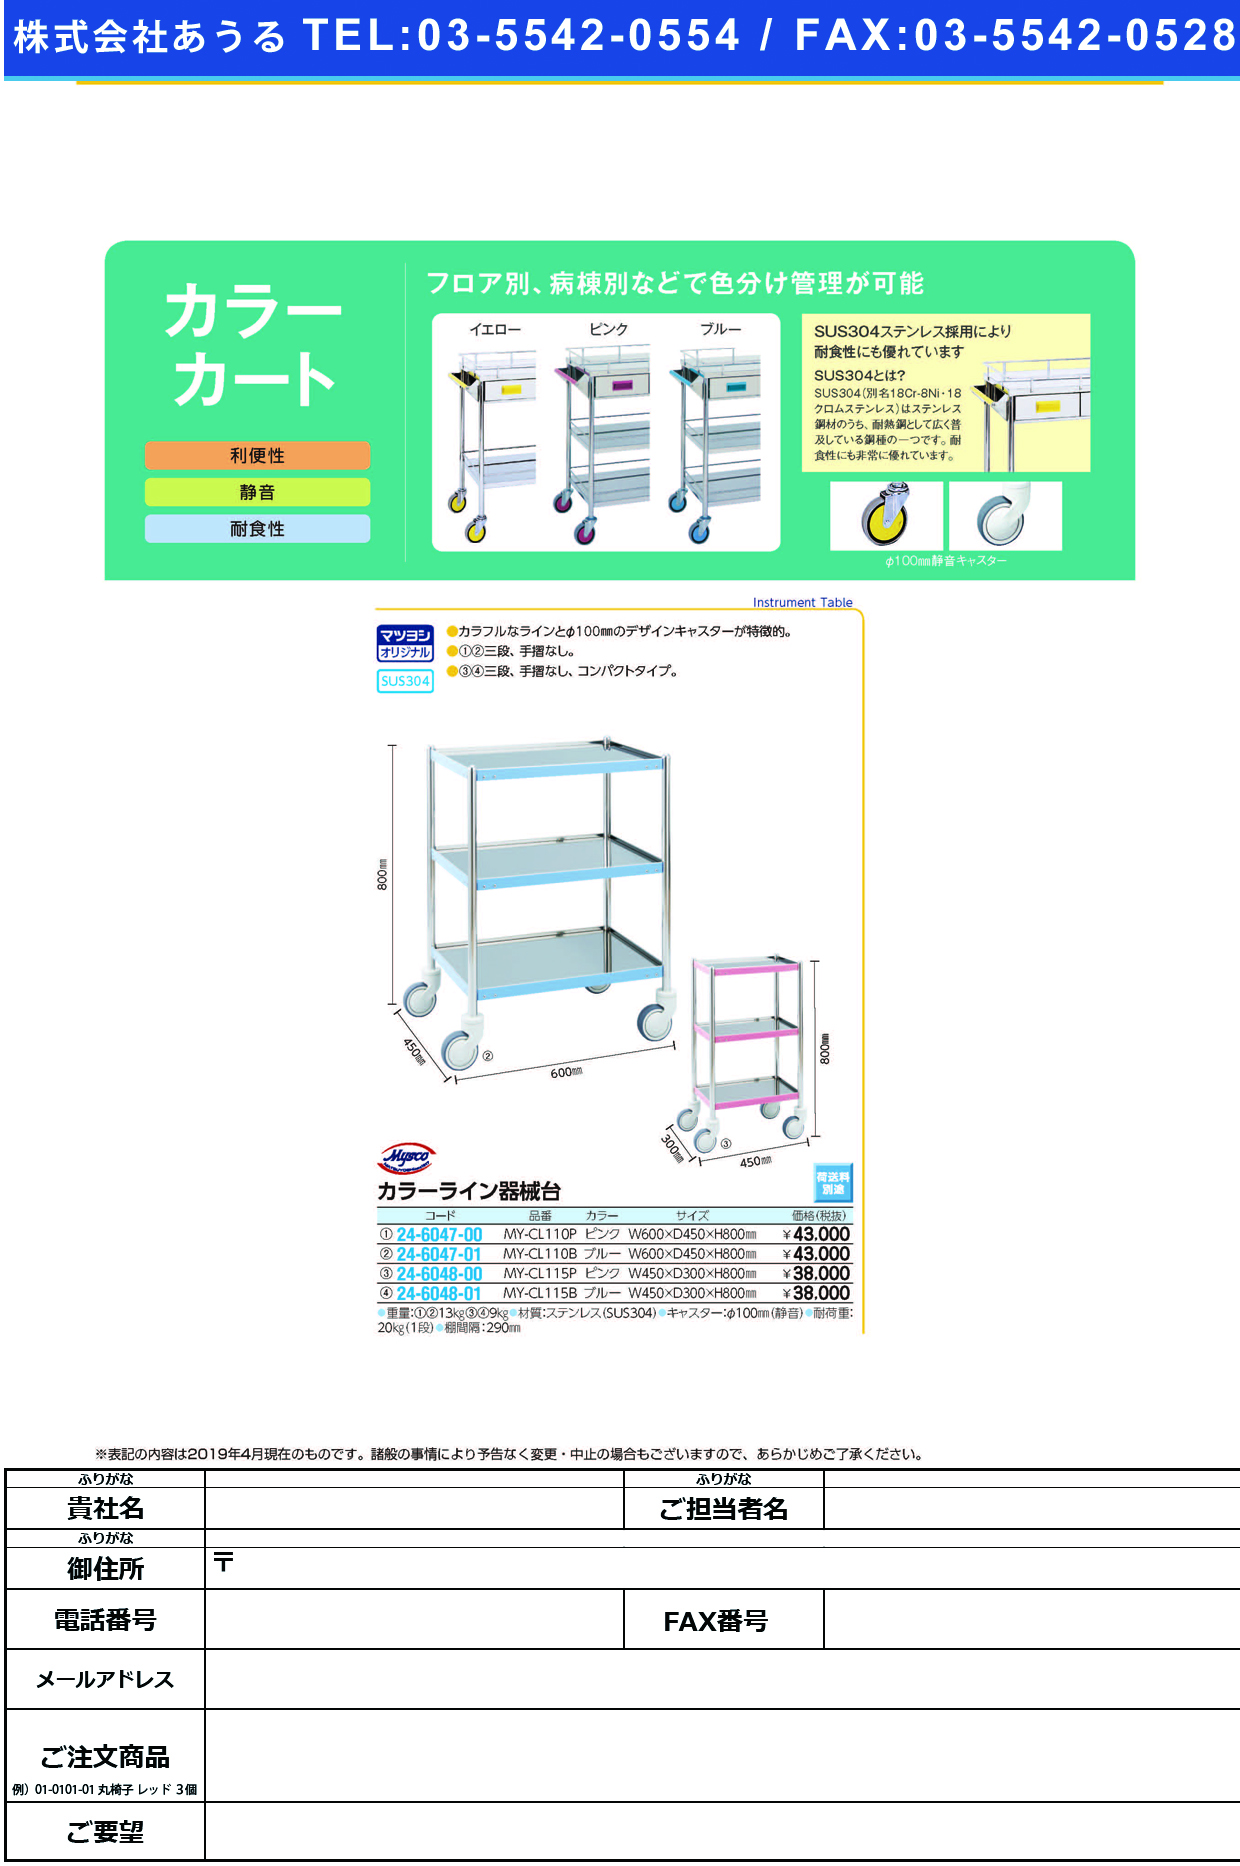 (24-6047-01)カラーライン器械台 MY-CL110B(ﾌﾞﾙｰ) ｶﾗｰﾗｲﾝｷｶｲﾀﾞｲ【1台単位】【2019年カタログ商品】